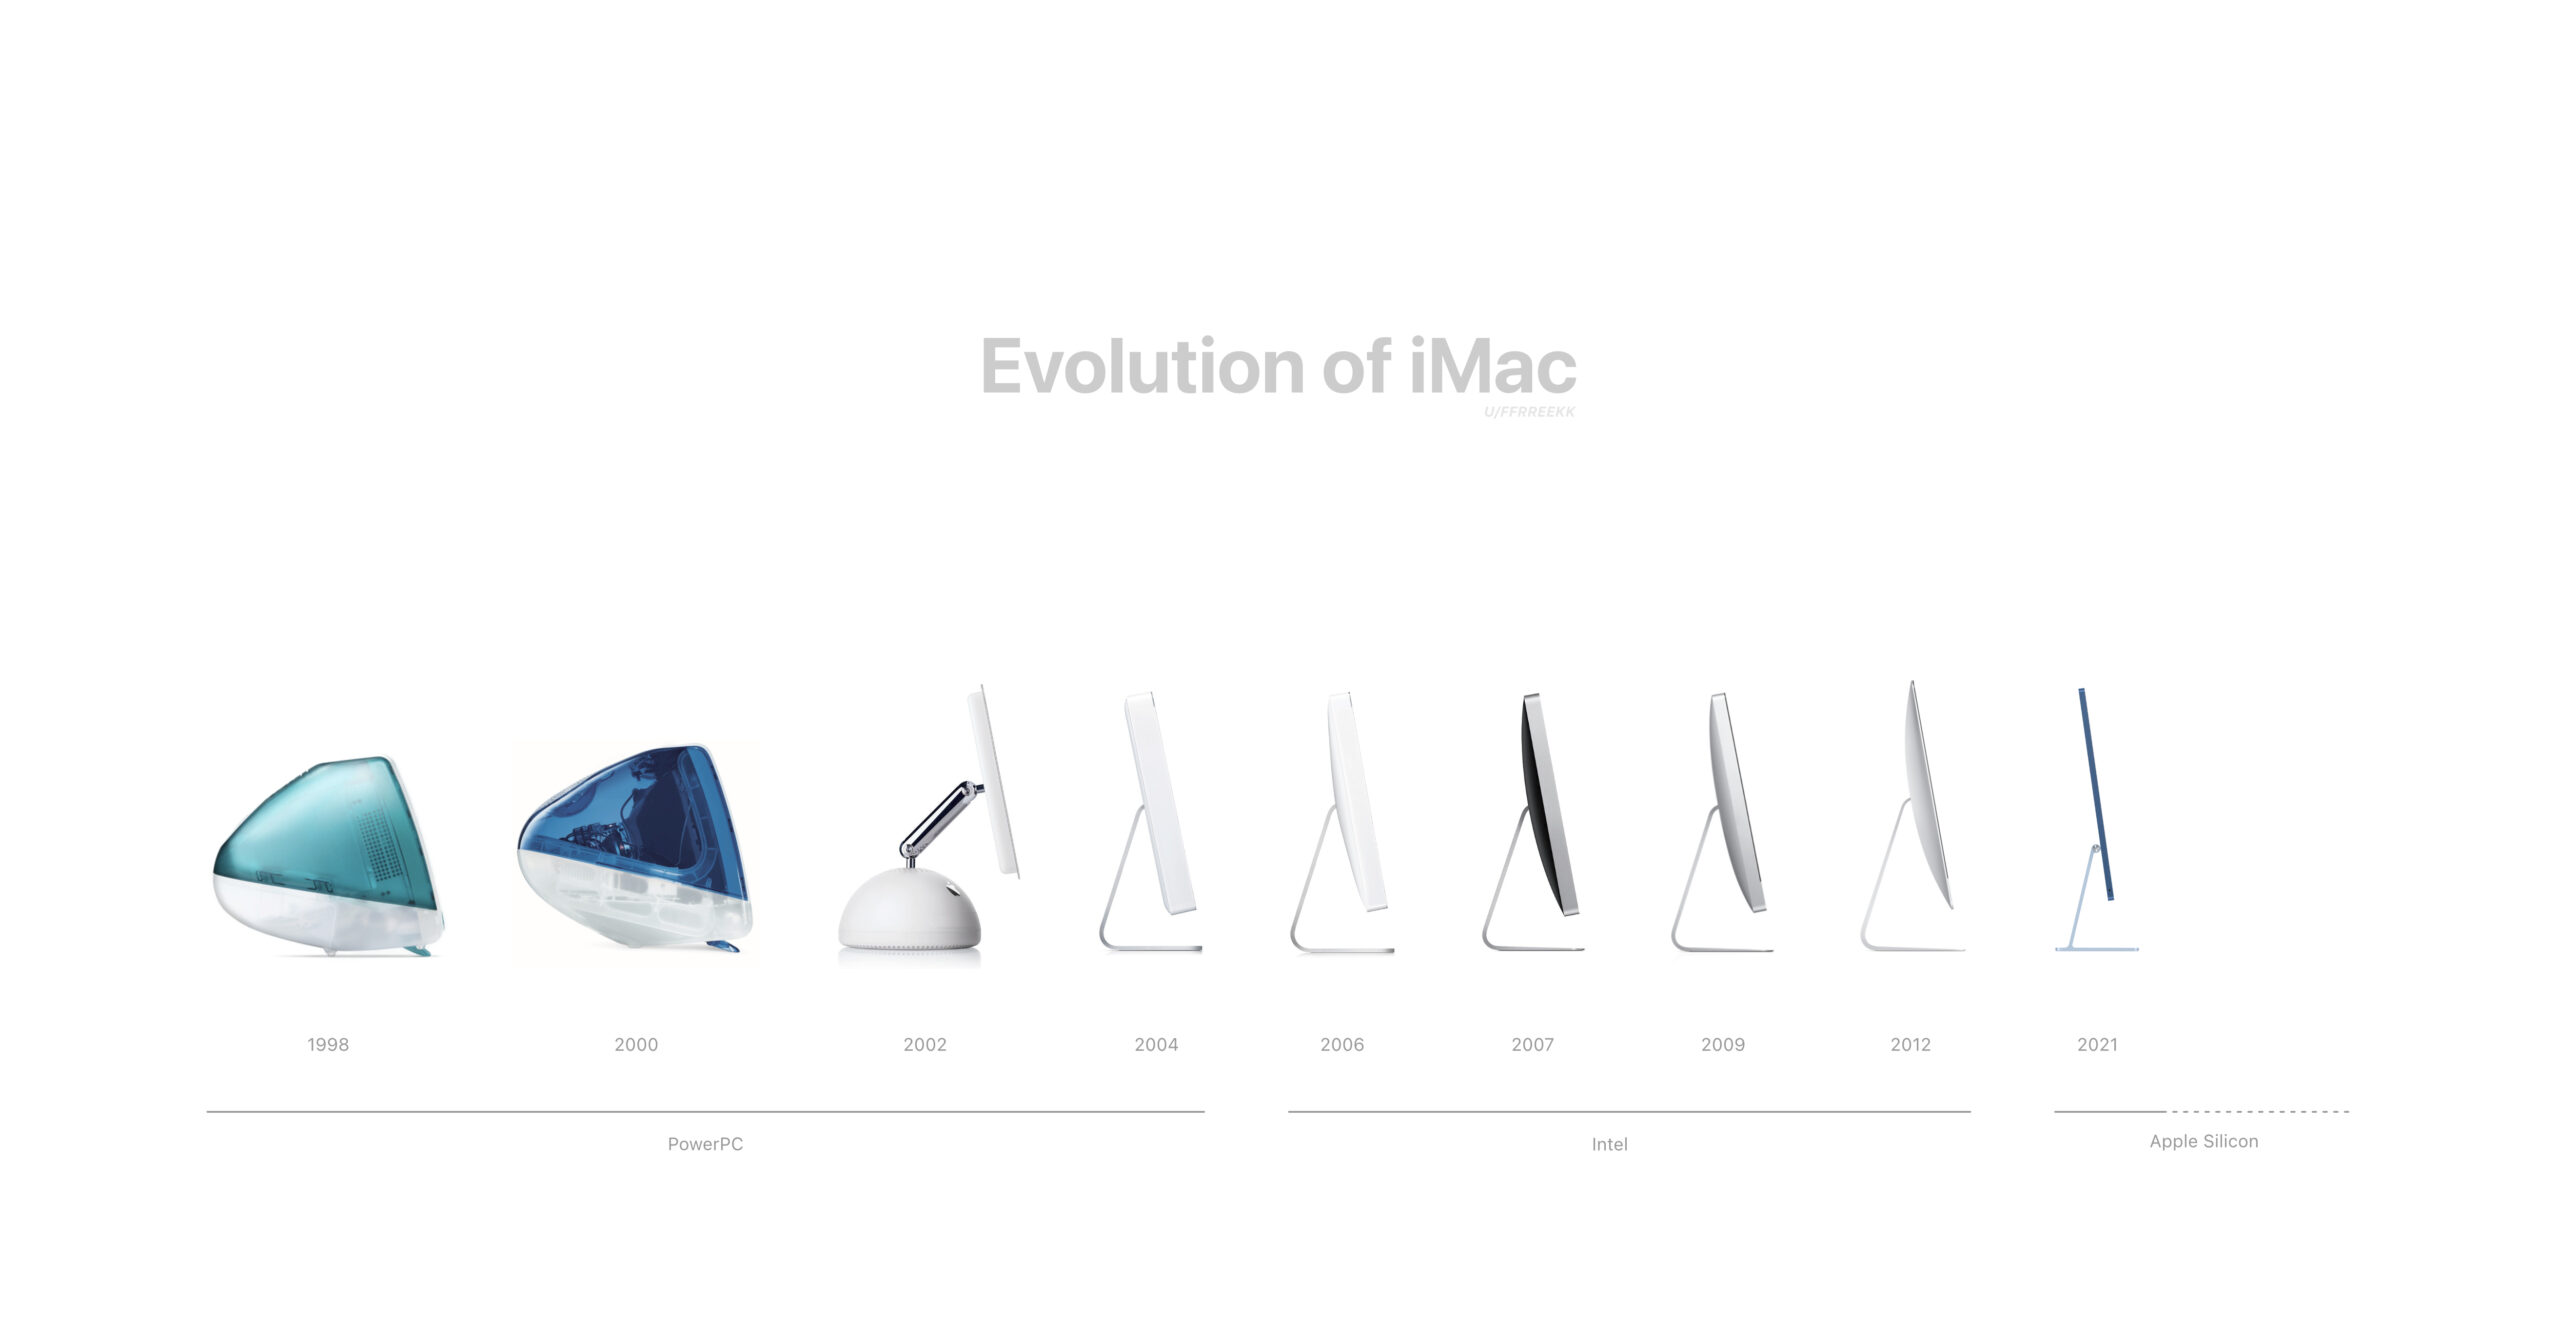 初代｢iMac｣の発売から25周年を迎える